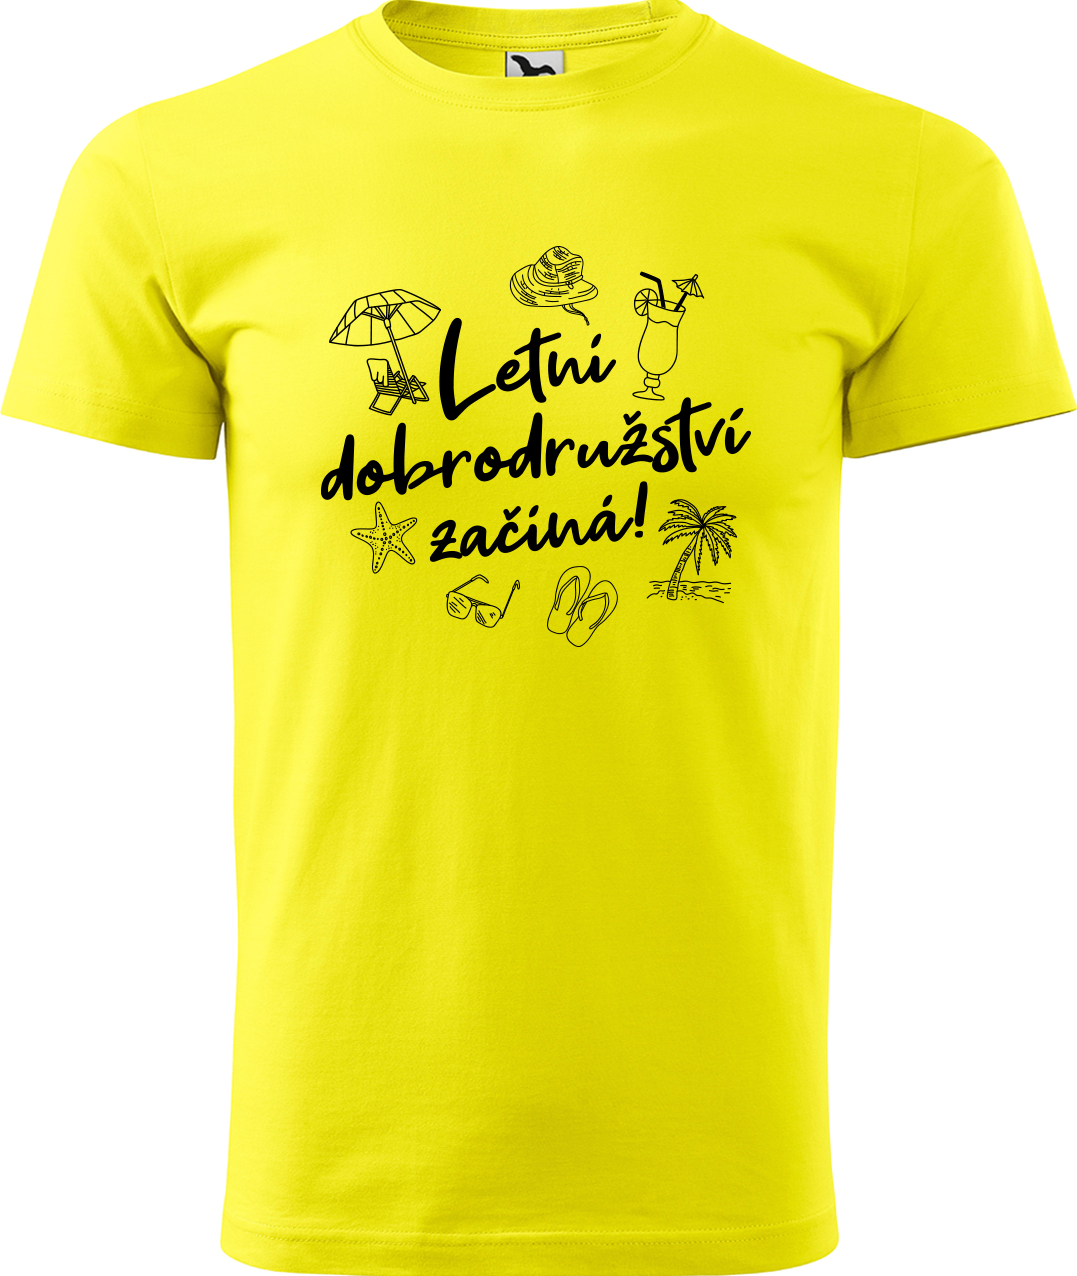 Pánské cestovatelské tričko - Letní dobrodružství začíná! Velikost: L, Barva: Žlutá (04), Střih: pánský